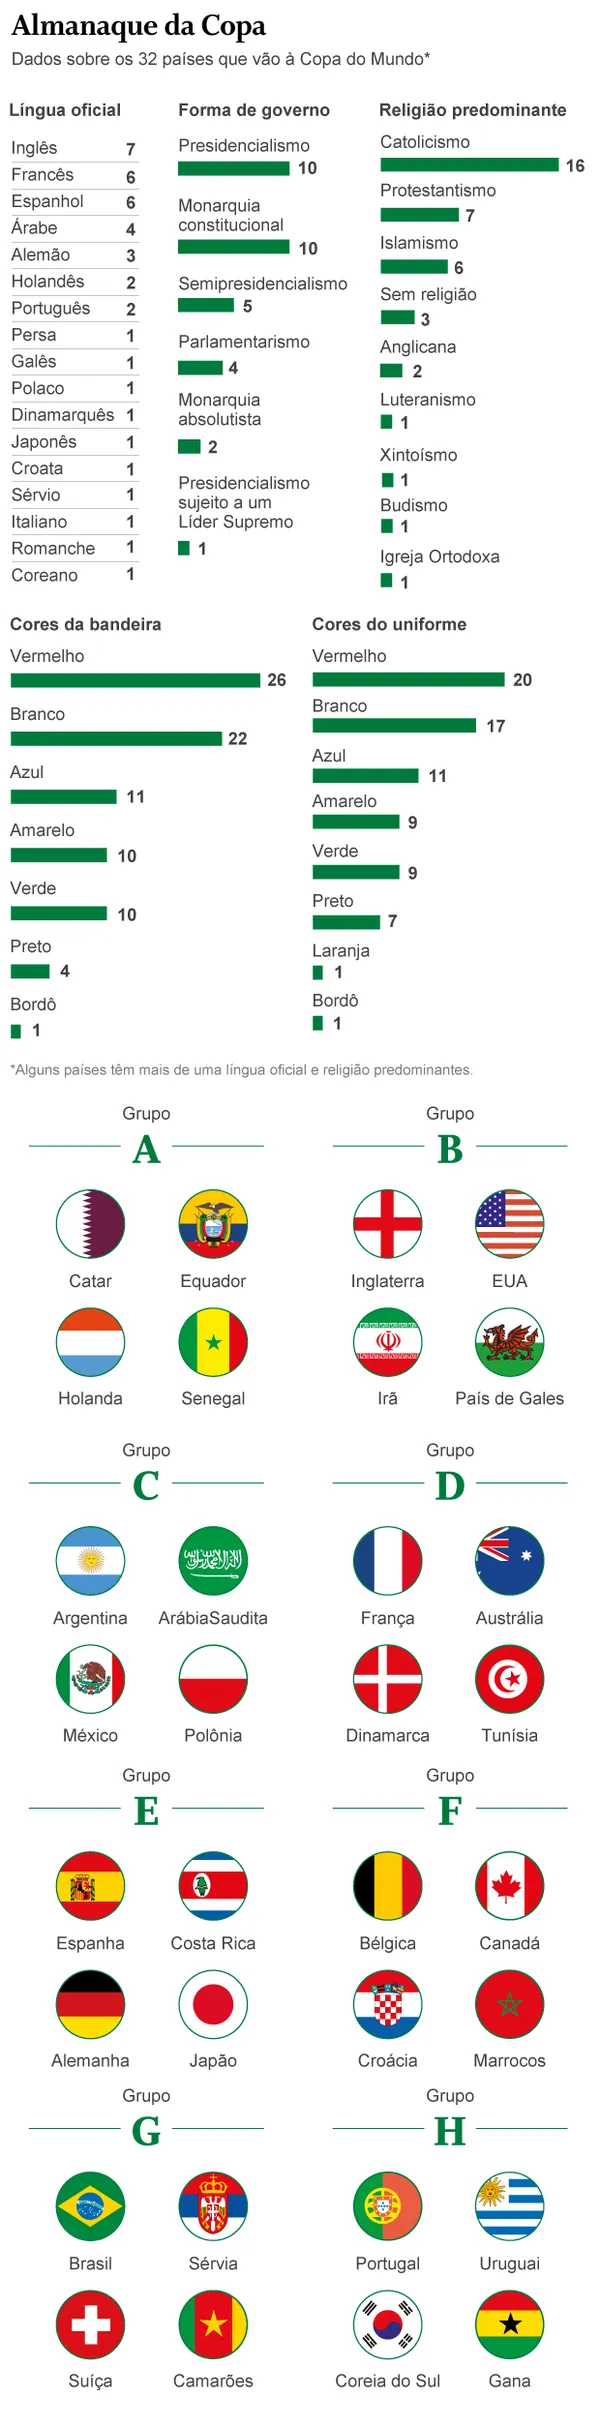 32 bandas de países da Copa do Mundo - Grupo E